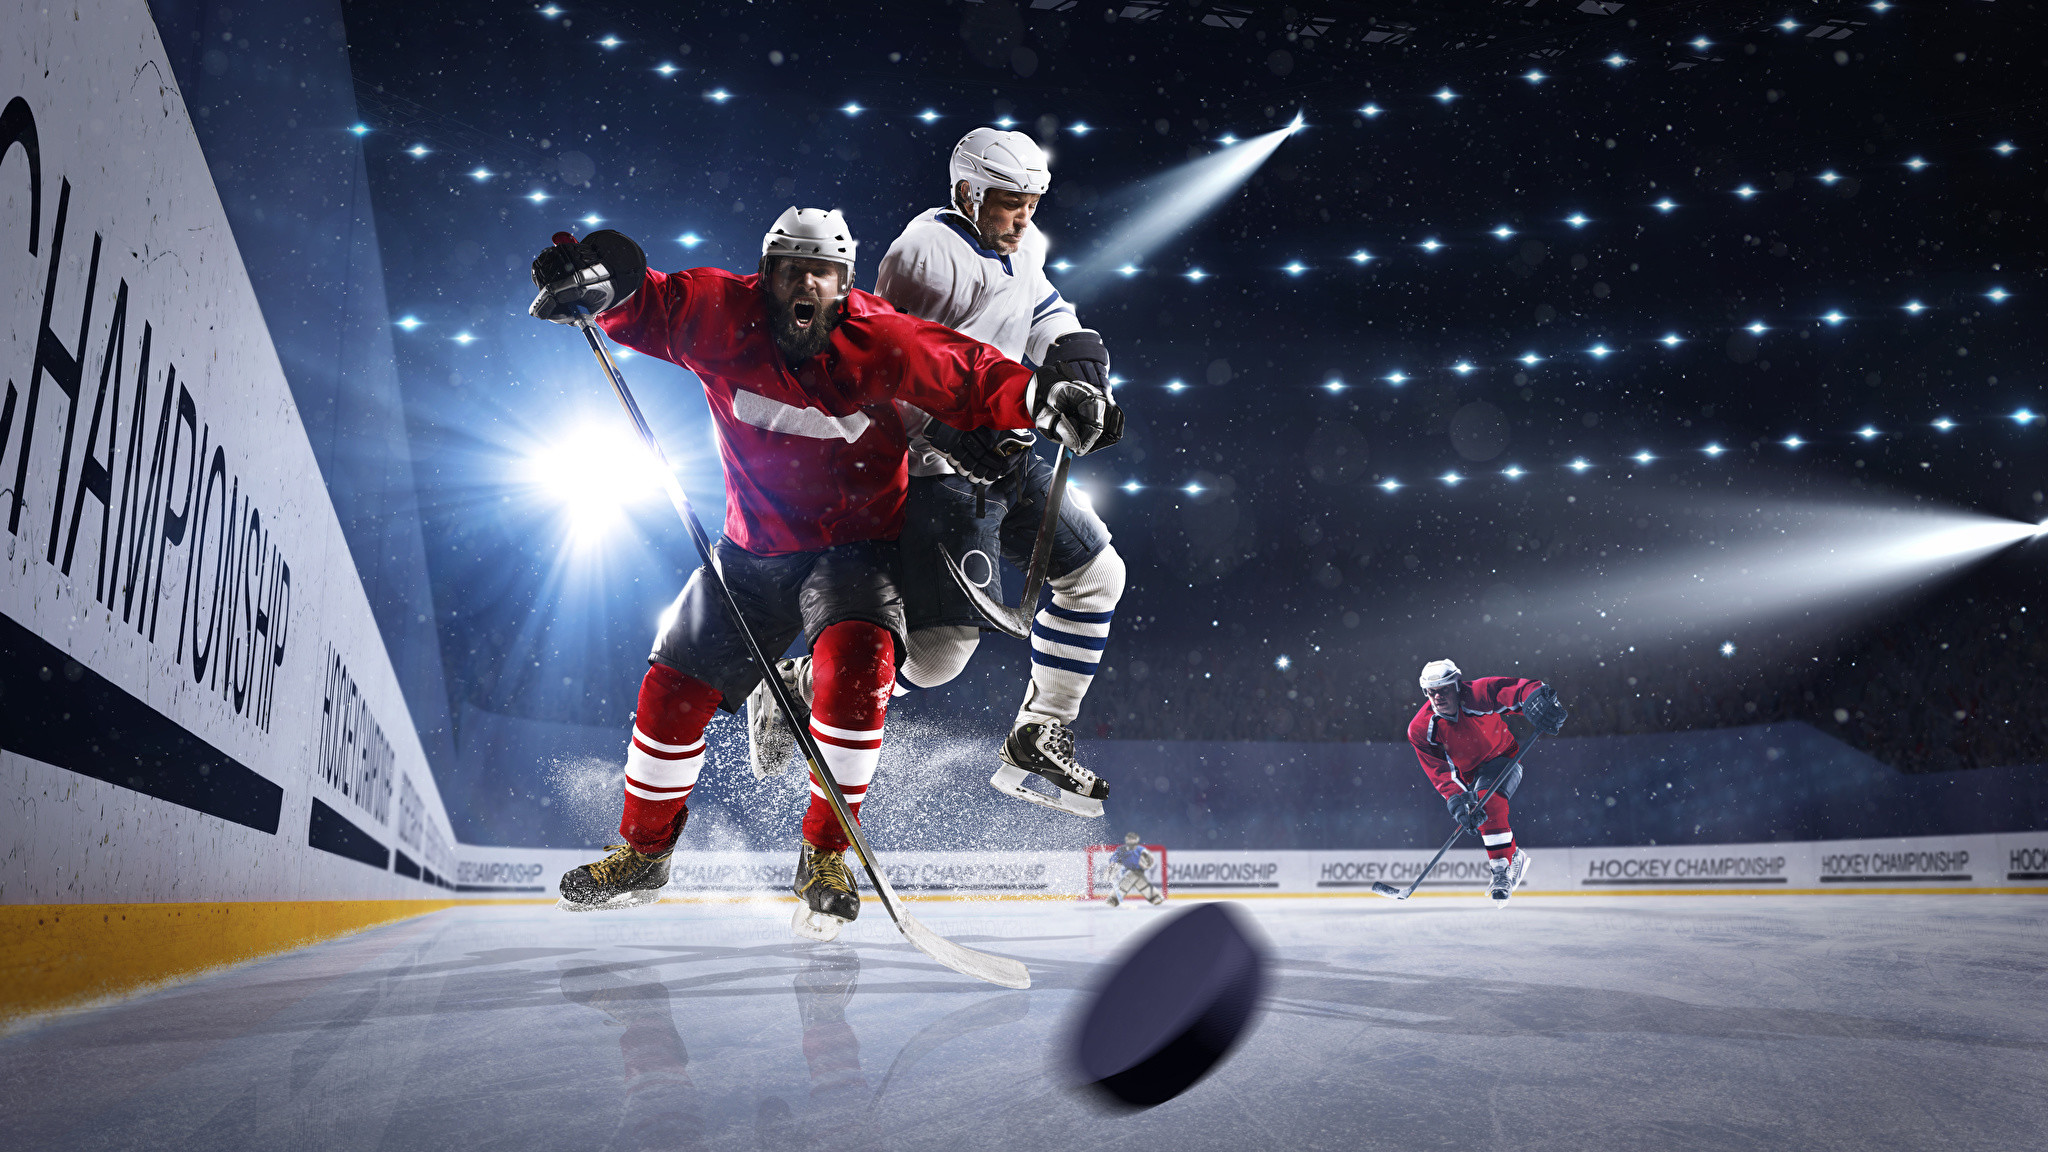 fond d'écran de hockey,hockey sur glace,le hockey,jeux de bâton et de balle,joueur,des sports